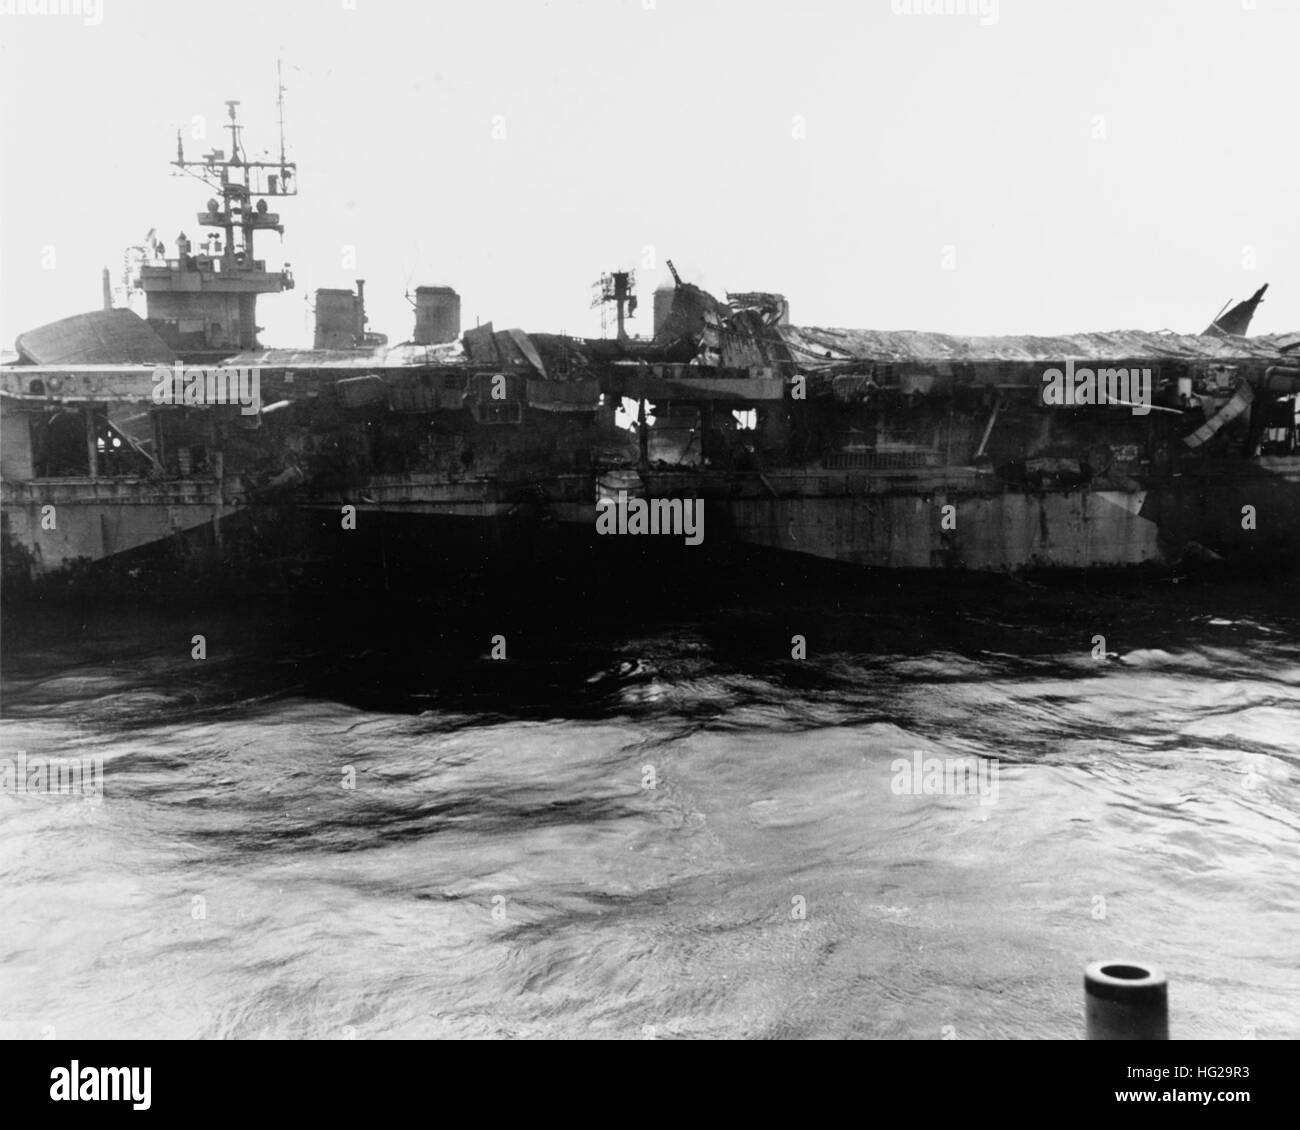 Vue de la région de Princeton port au milieu du navire, en montrant son avion s'est effondré de l'avant et de l'élévateur en éclats d'envol, les résultats d'explosions dans son pont japonais à la suite d'une bombe a frappé au large des Philippines le 24 octobre 1944. Photographié de l'USS Birmingham (CL-62), qui s'en venait aux côtés d'aider avec l'incendie. Photographie de la Marine américaine officielle, aujourd'hui dans les collections des Archives nationales. USS Princeton (CVL-23) endommagé 1 Banque D'Images